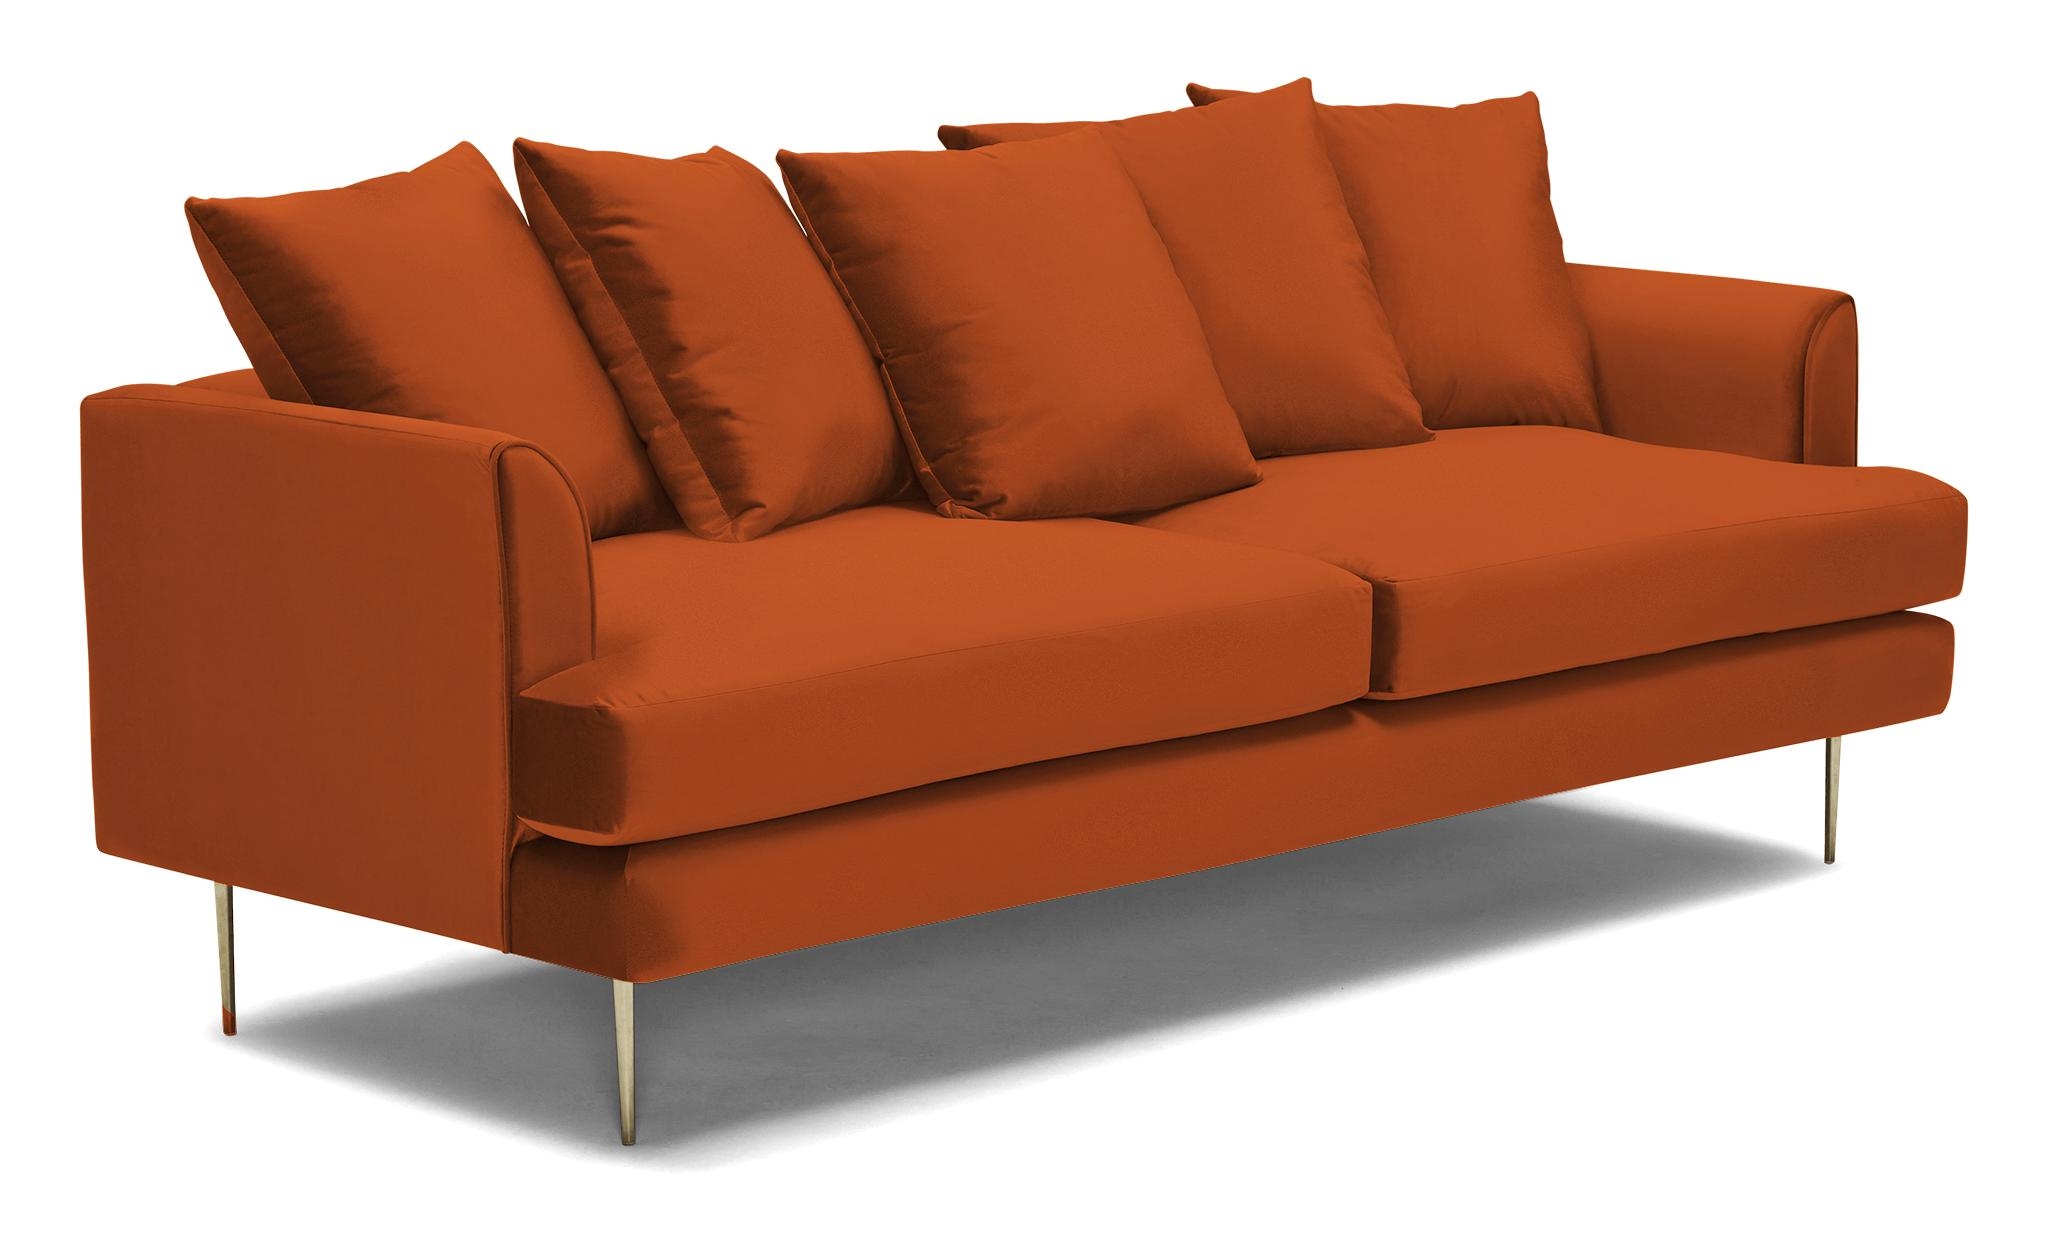 Orange Aime Mid Century Modern Sofa - Vibe Sunkist - Image 1